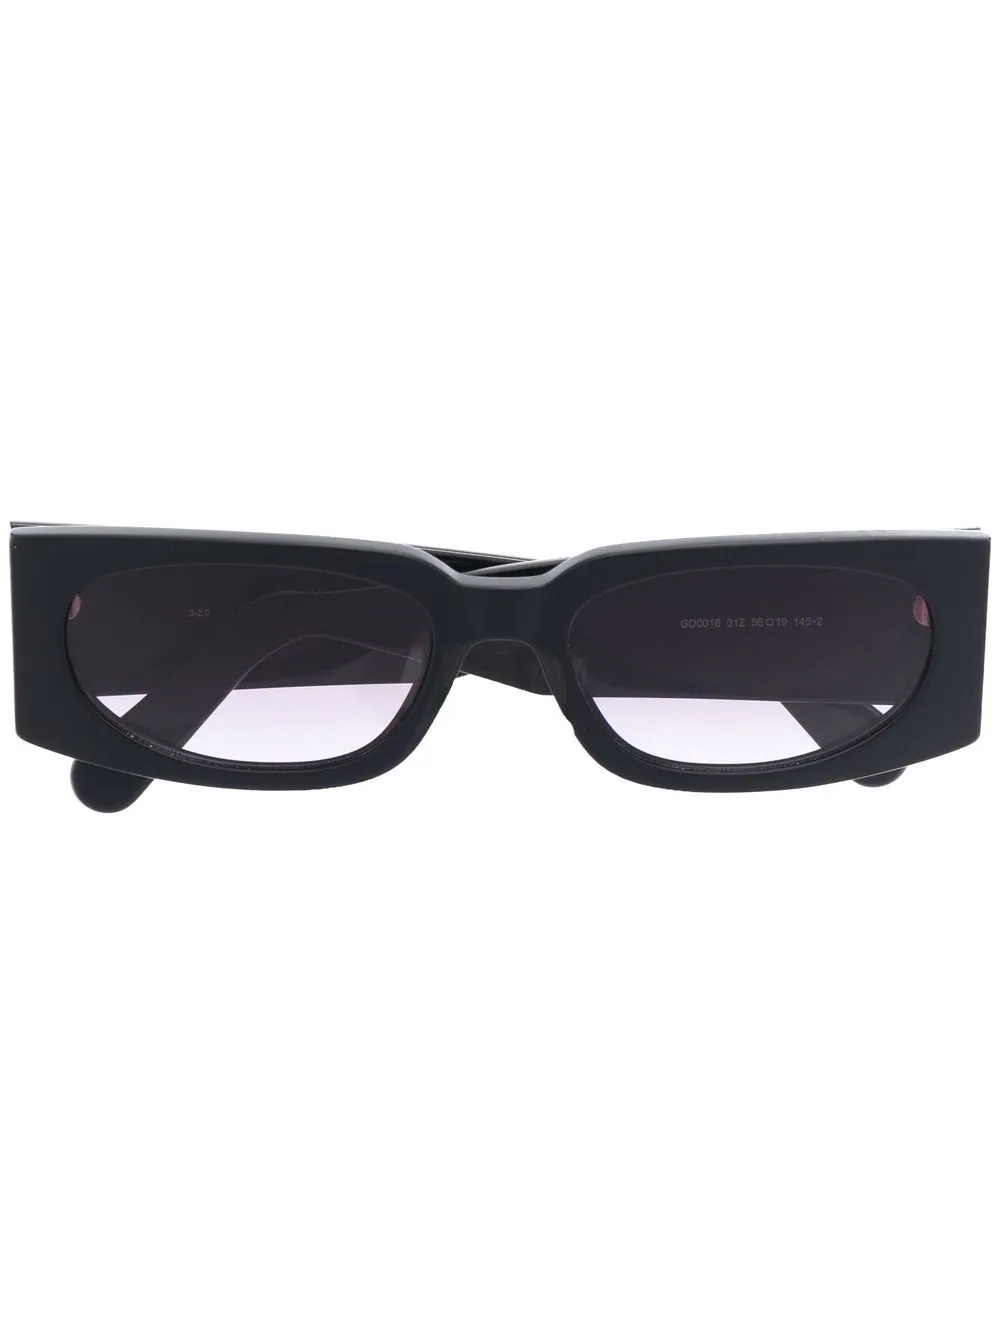 rectangular frame sunglasses - 1